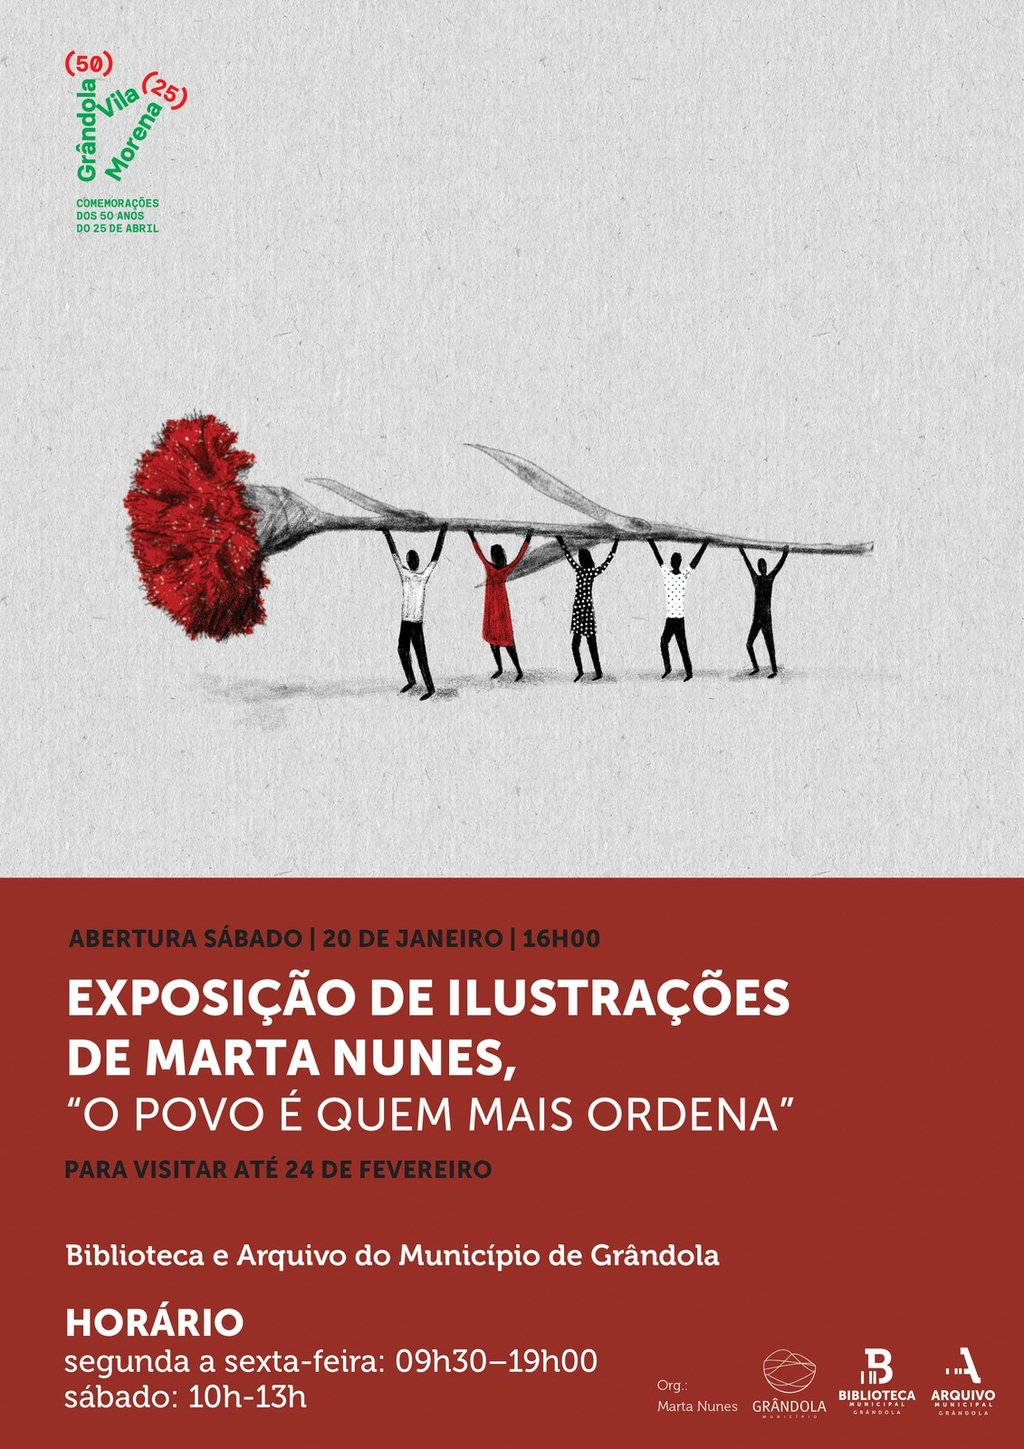 CULTURA | Exposição de Ilustrações de Marta Nunes, " O POVO É QUEM MAIS ORDENA"